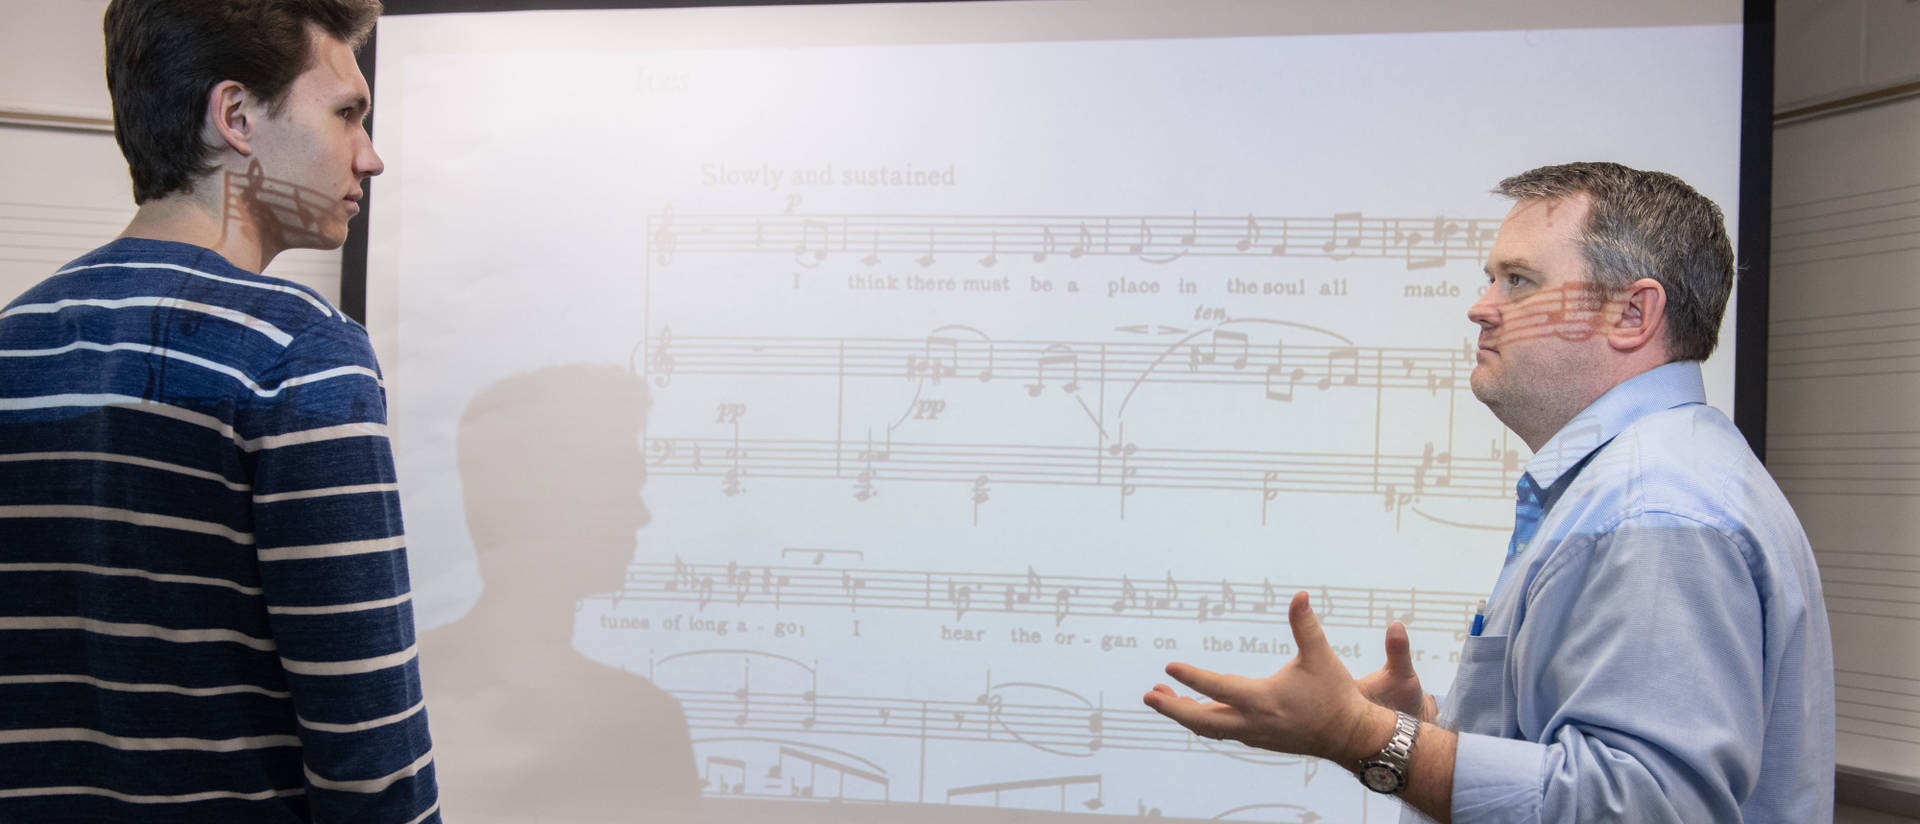 UWEC music student and professor discuss music